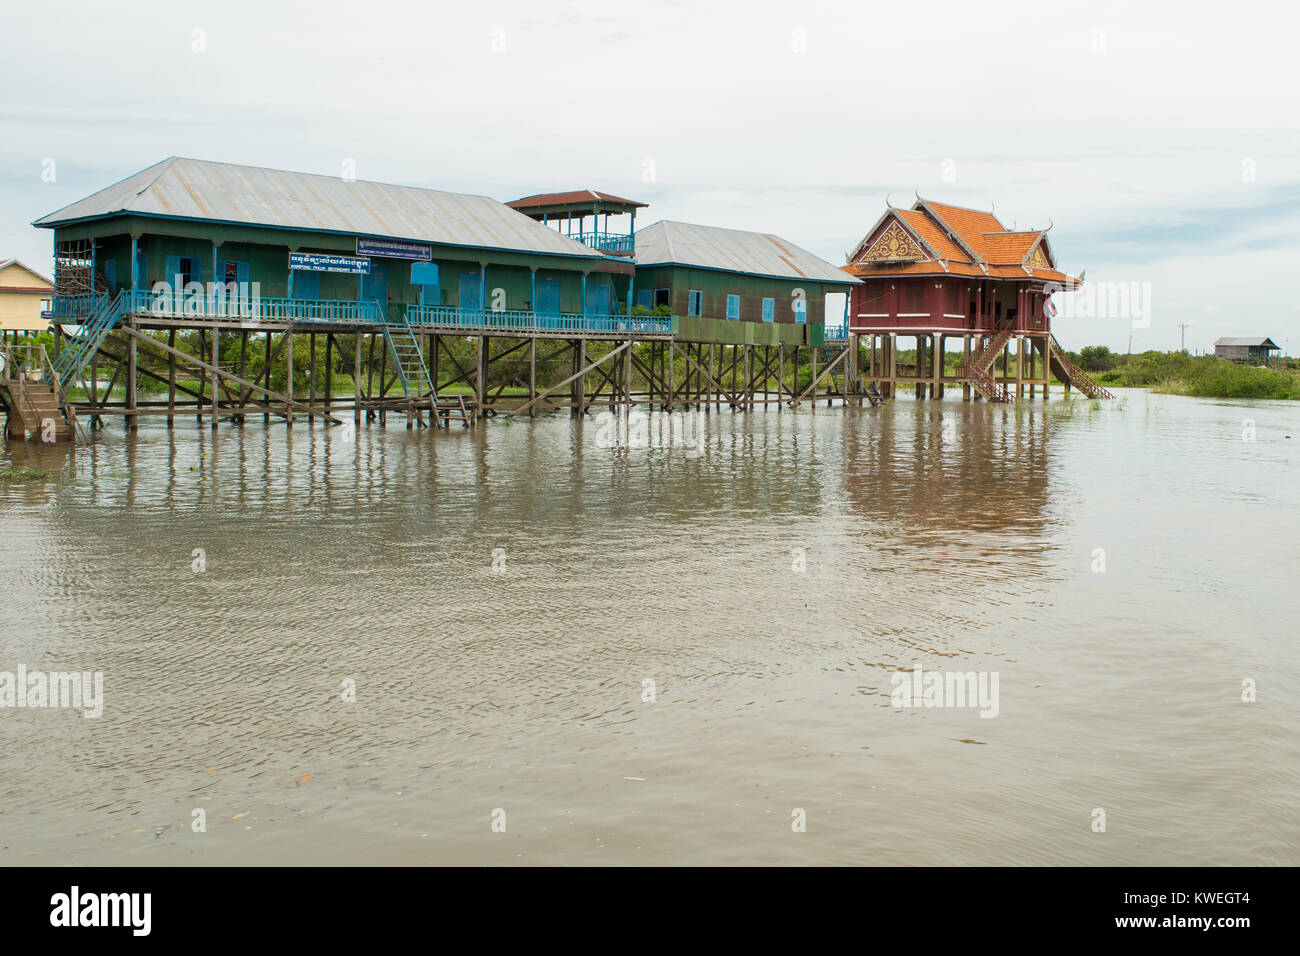 Deux bâtiments, maisons sur pilotis, flottante, sur la rivière Tonle Sap lake, dans la région de Kampong Phluk village, Siem Reap, Cambodge, Asie du sud-est Banque D'Images